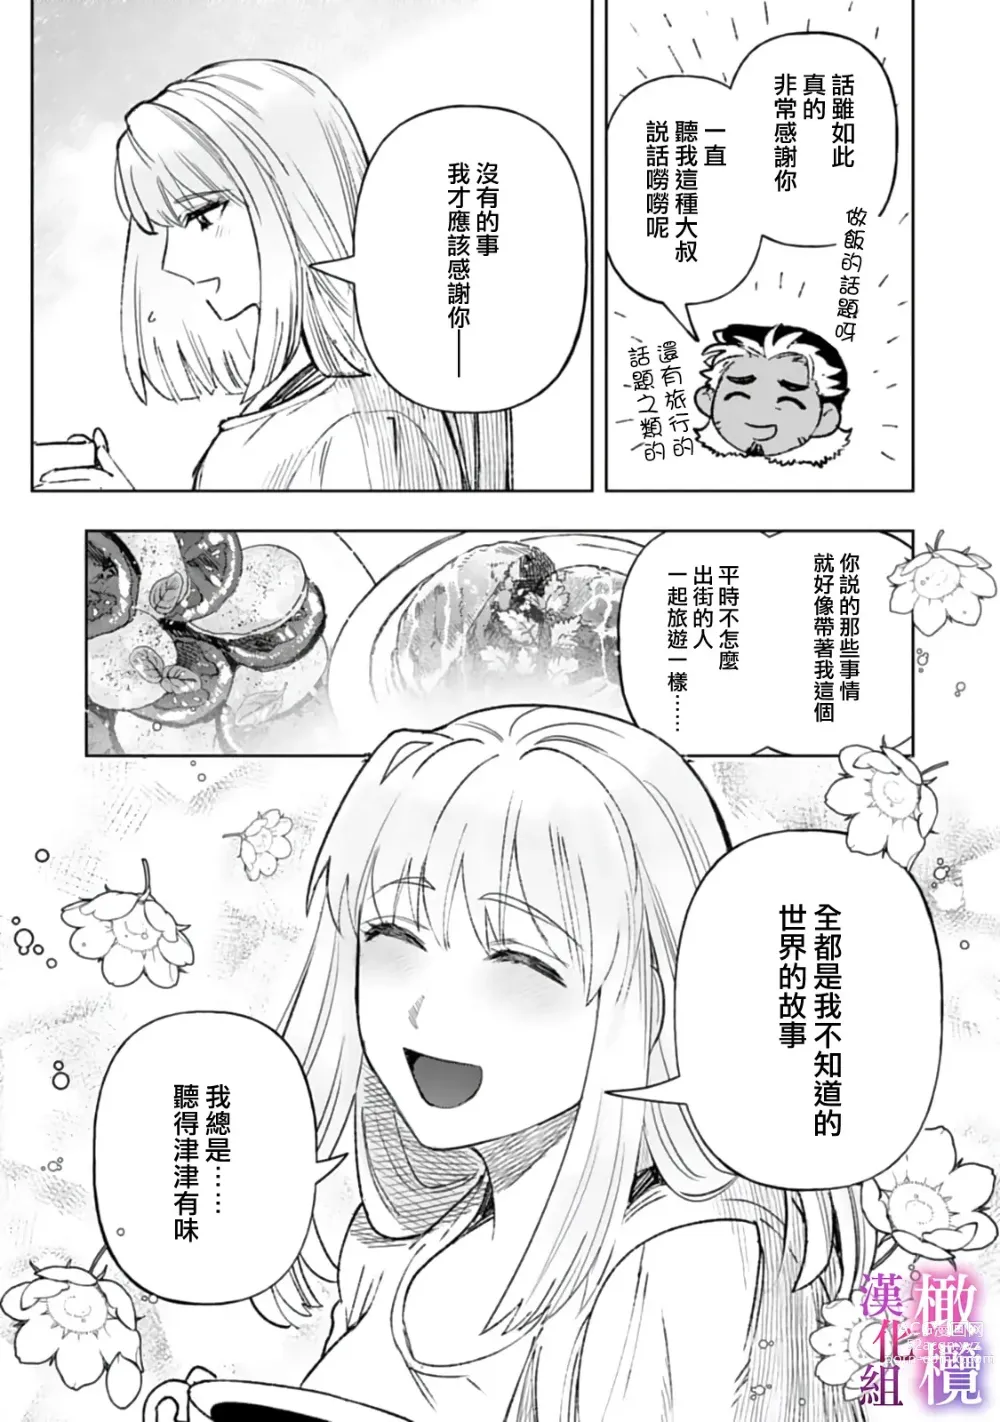 Page 9 of manga 本能性欲 温柔年上狼沉醉于处女费洛蒙 01~03